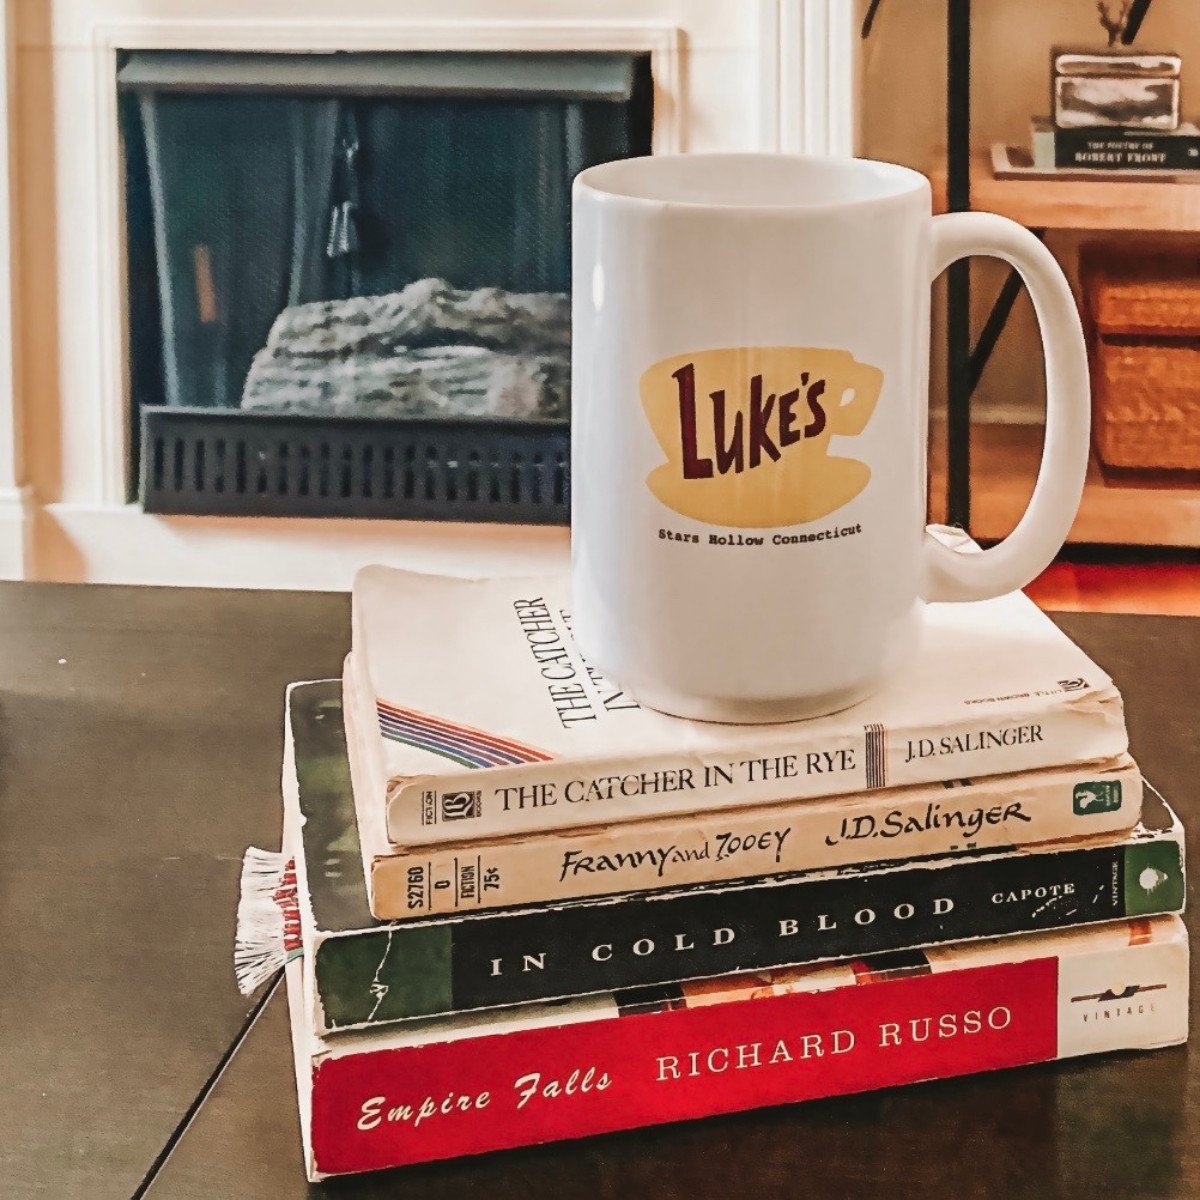 Luke's Diner mug and books.